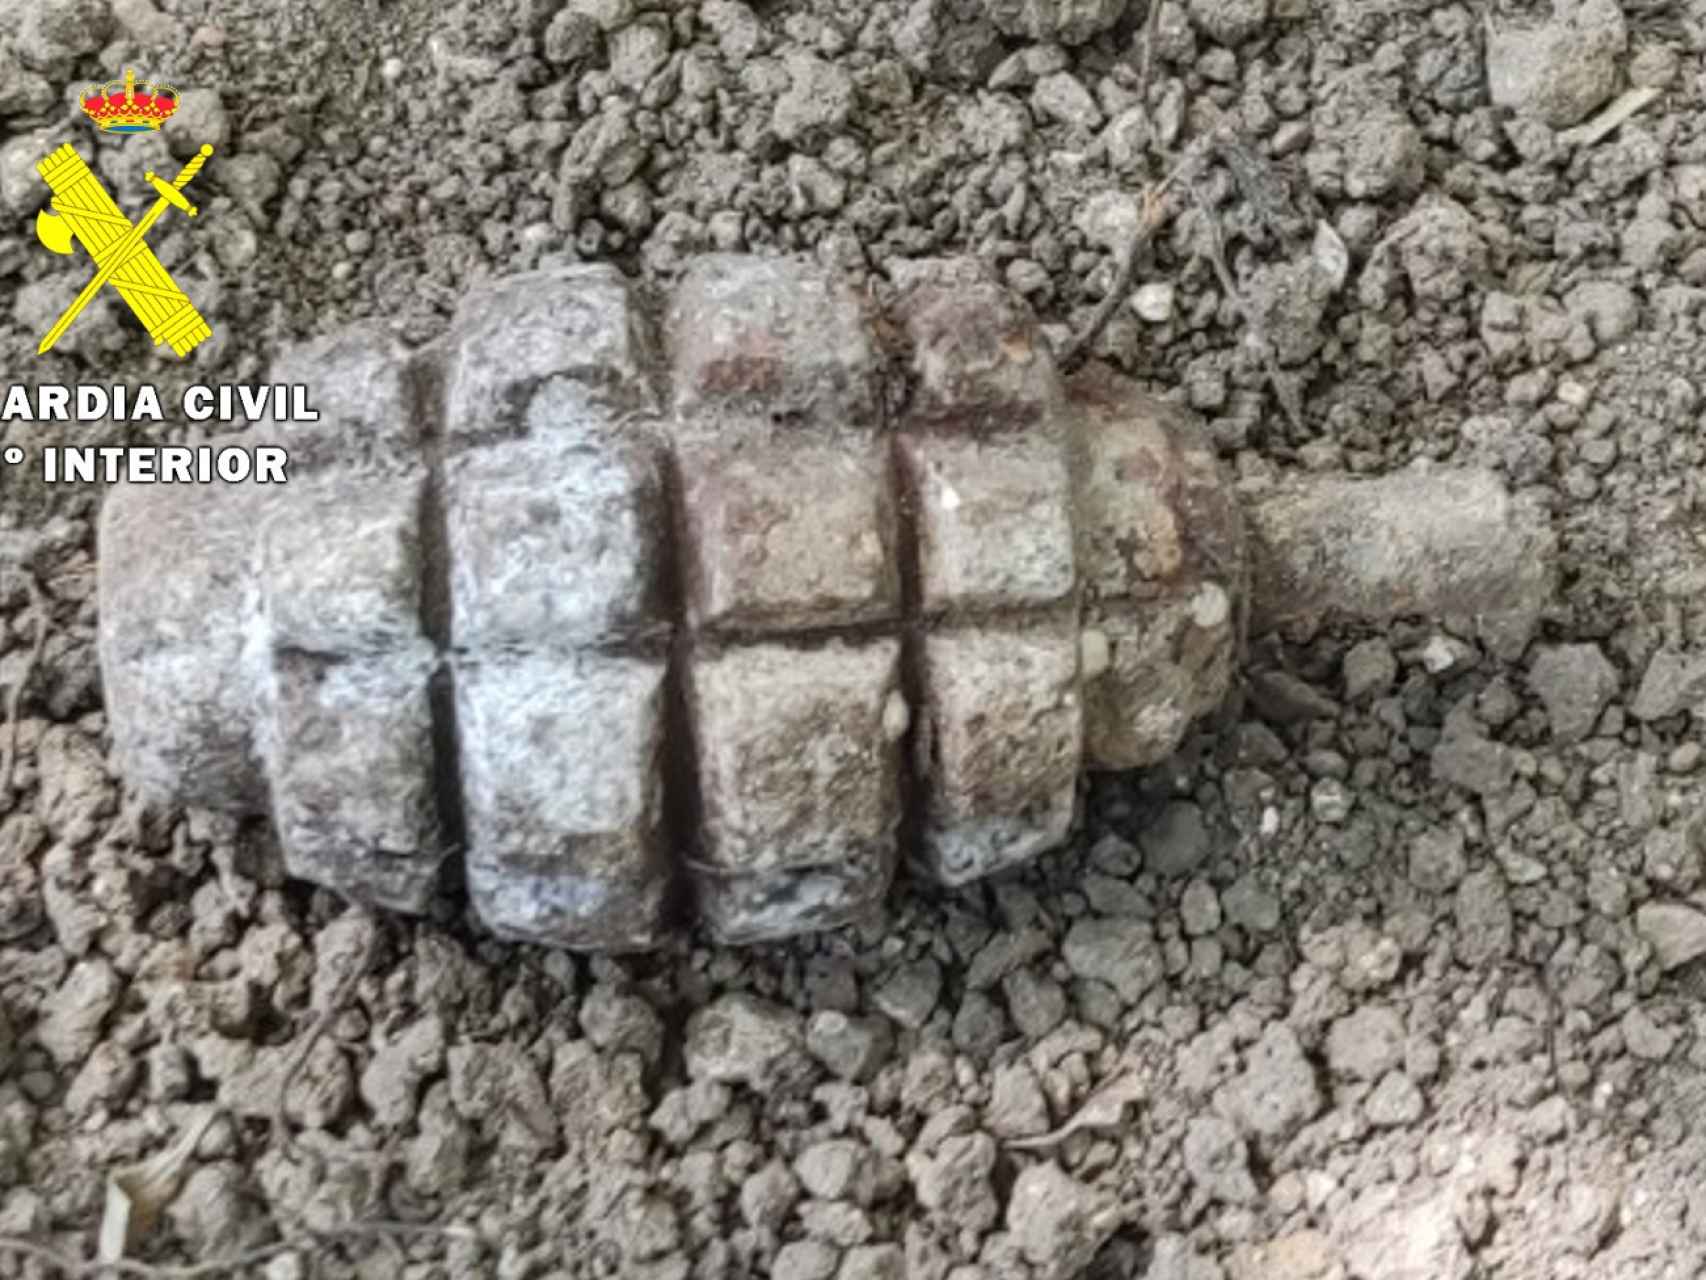 Imagen de la granada rusa usada en la Guerra Civil española encontrada en Burgos.